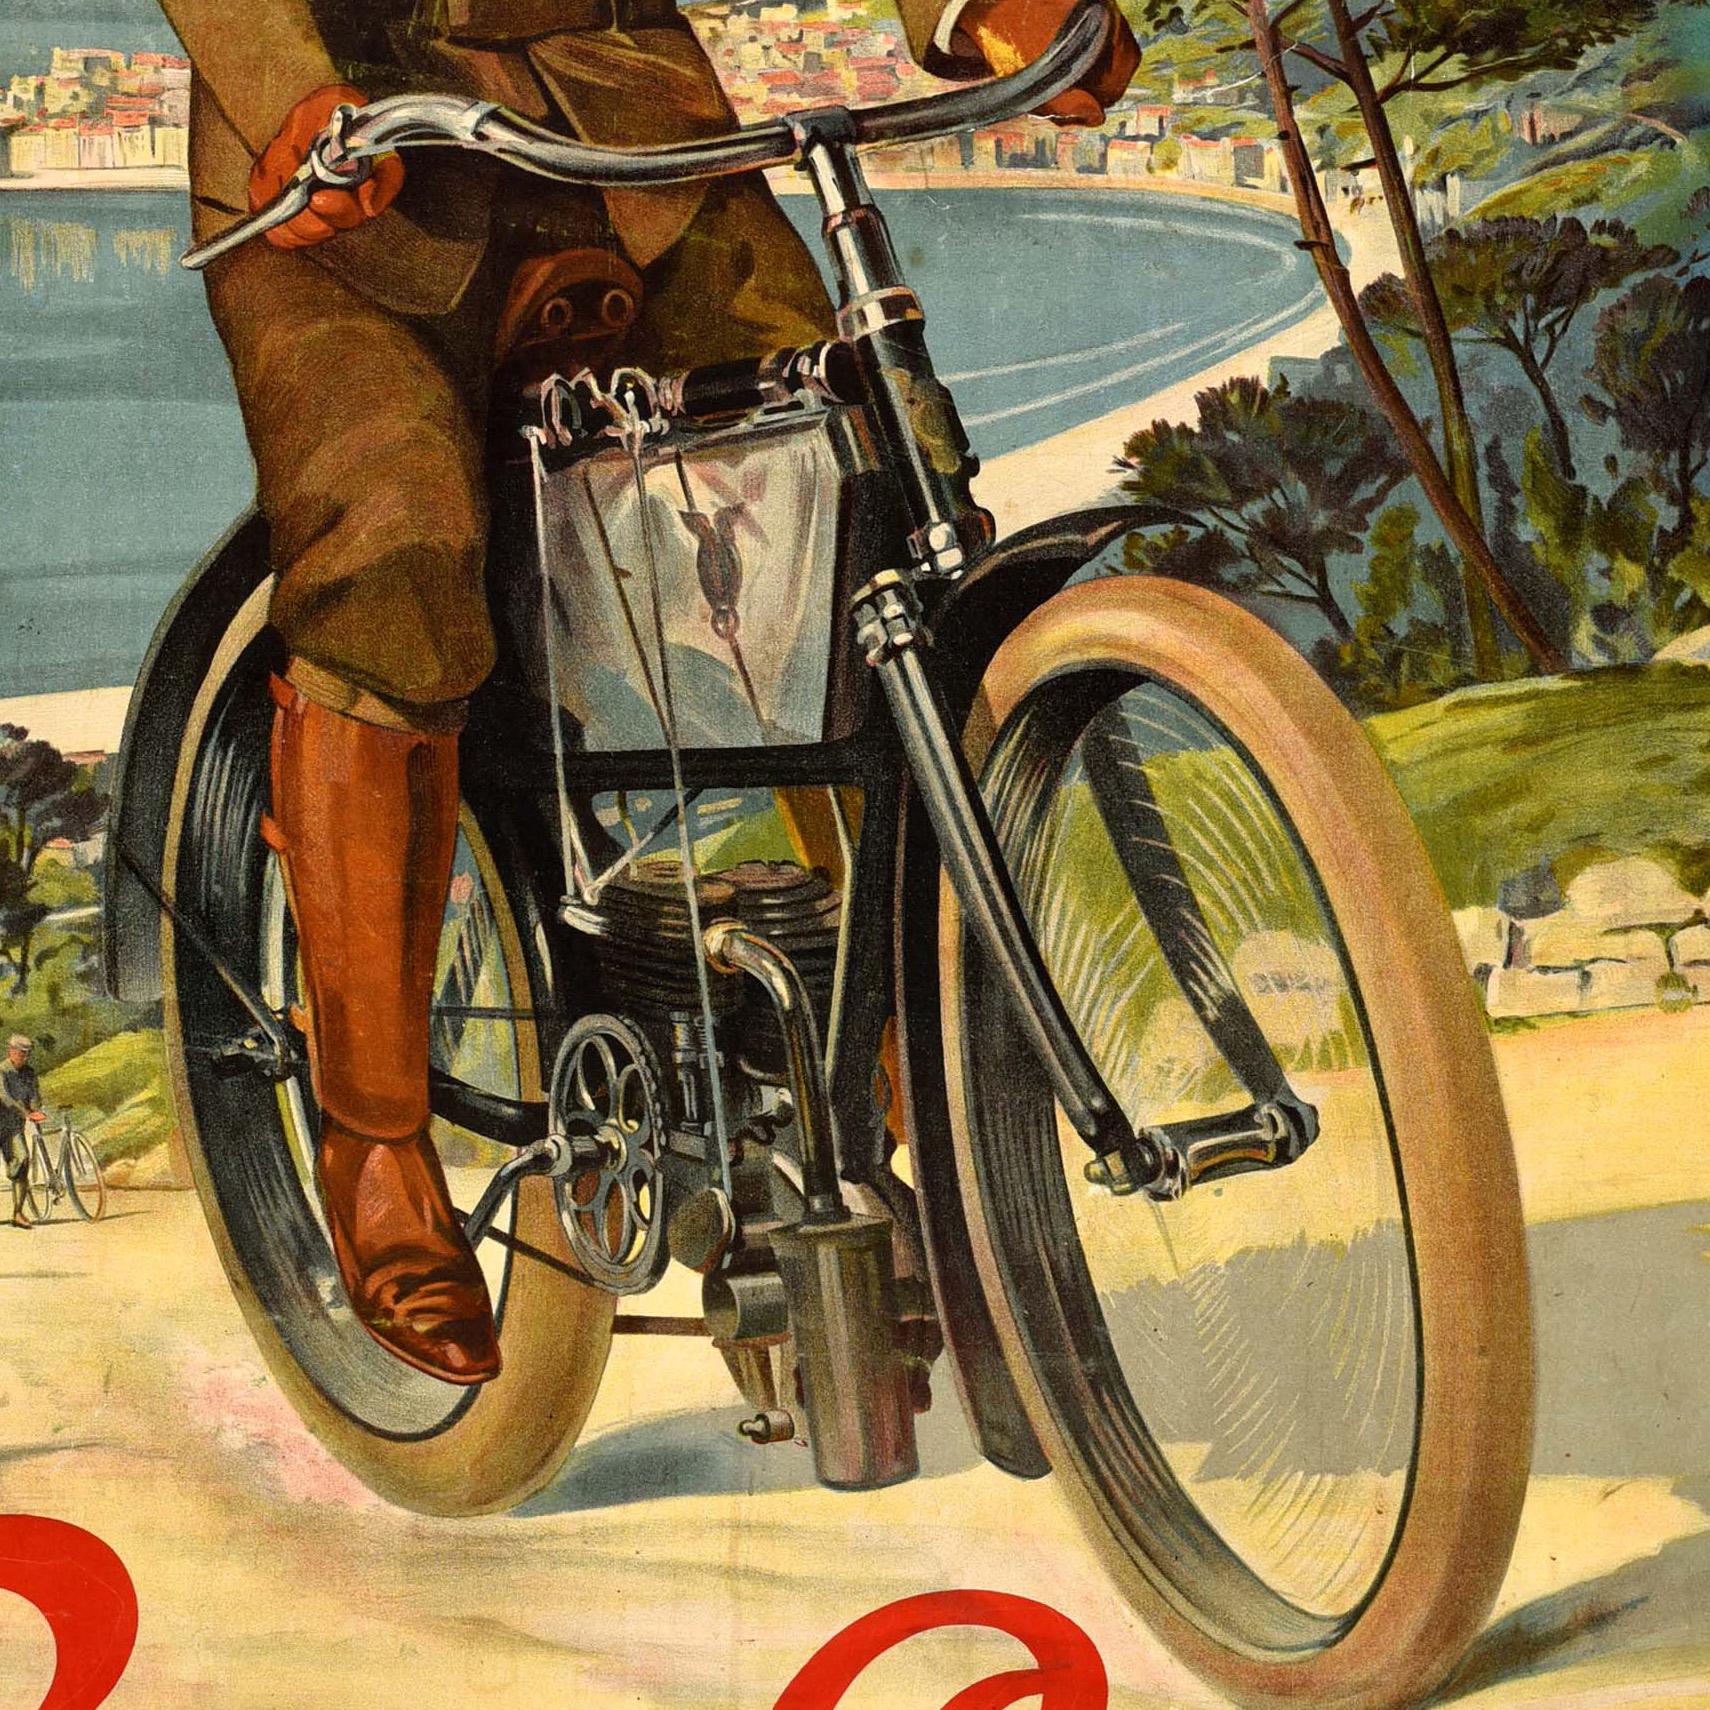 Affiche publicitaire originale pour les motos Hille, réalisée par l'artiste français Frédéric-Hugo de Alesi (1849-1906), représentant un homme moustachu, portant des gants, des bottes et une casquette, montant une colline avec aisance sur sa moto.